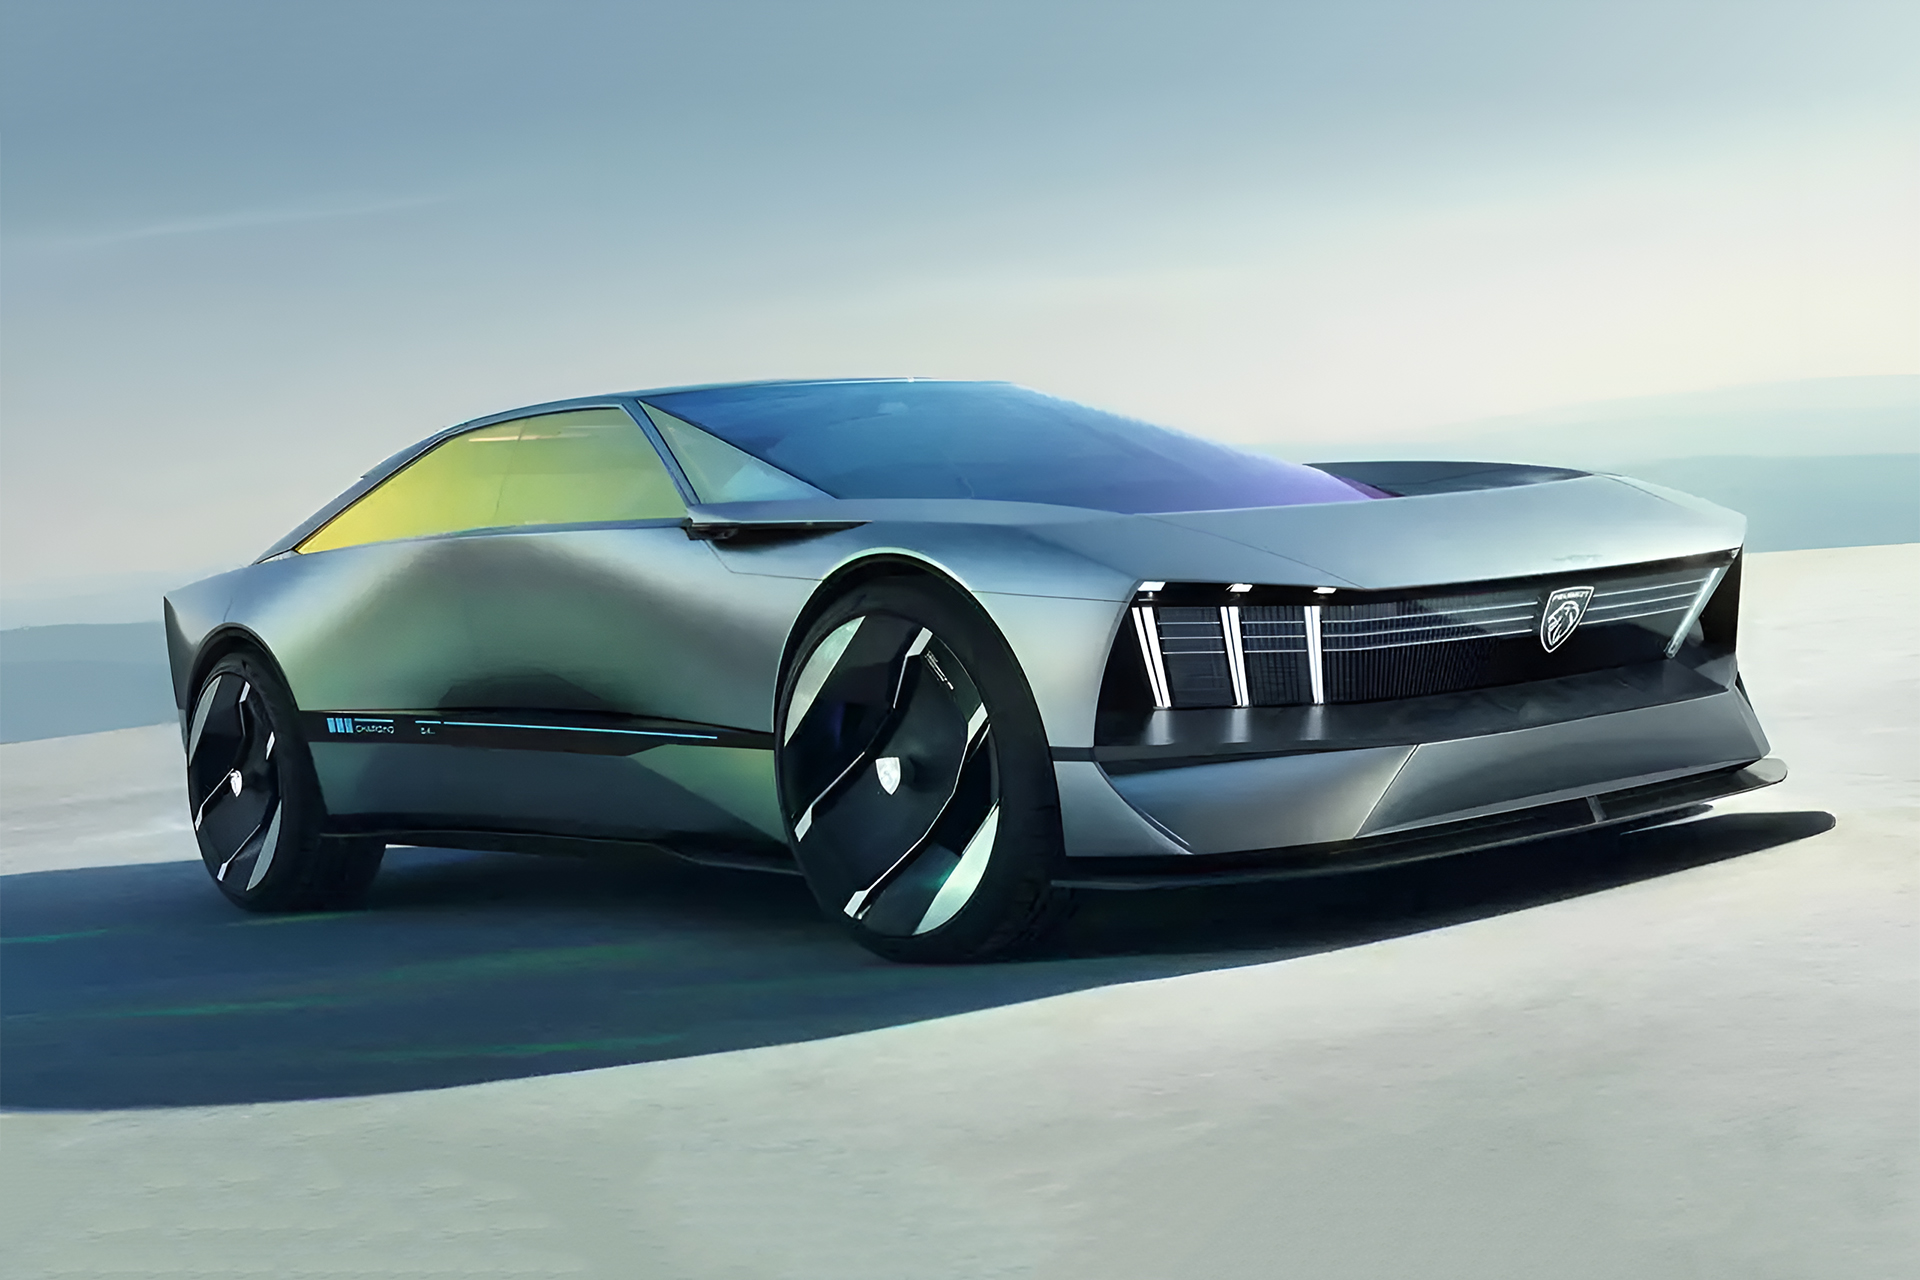 Carro elétrico conceito futurista da Peugeot, que possui carregamento por indução, garante 150 km de autonomia com apenas 5 minutos de carga